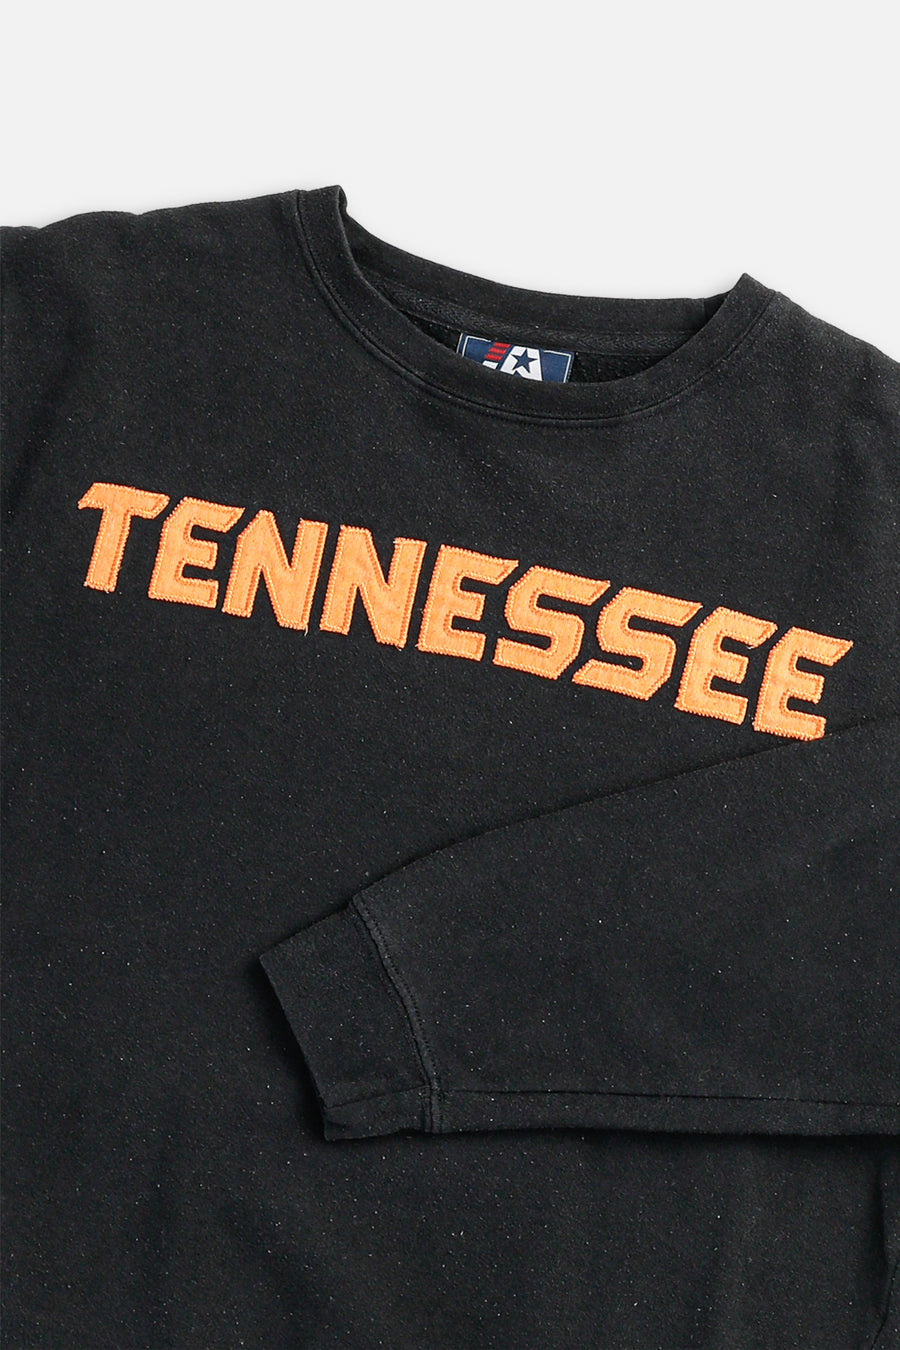 Vintage Tennessee Sweatshirt - M